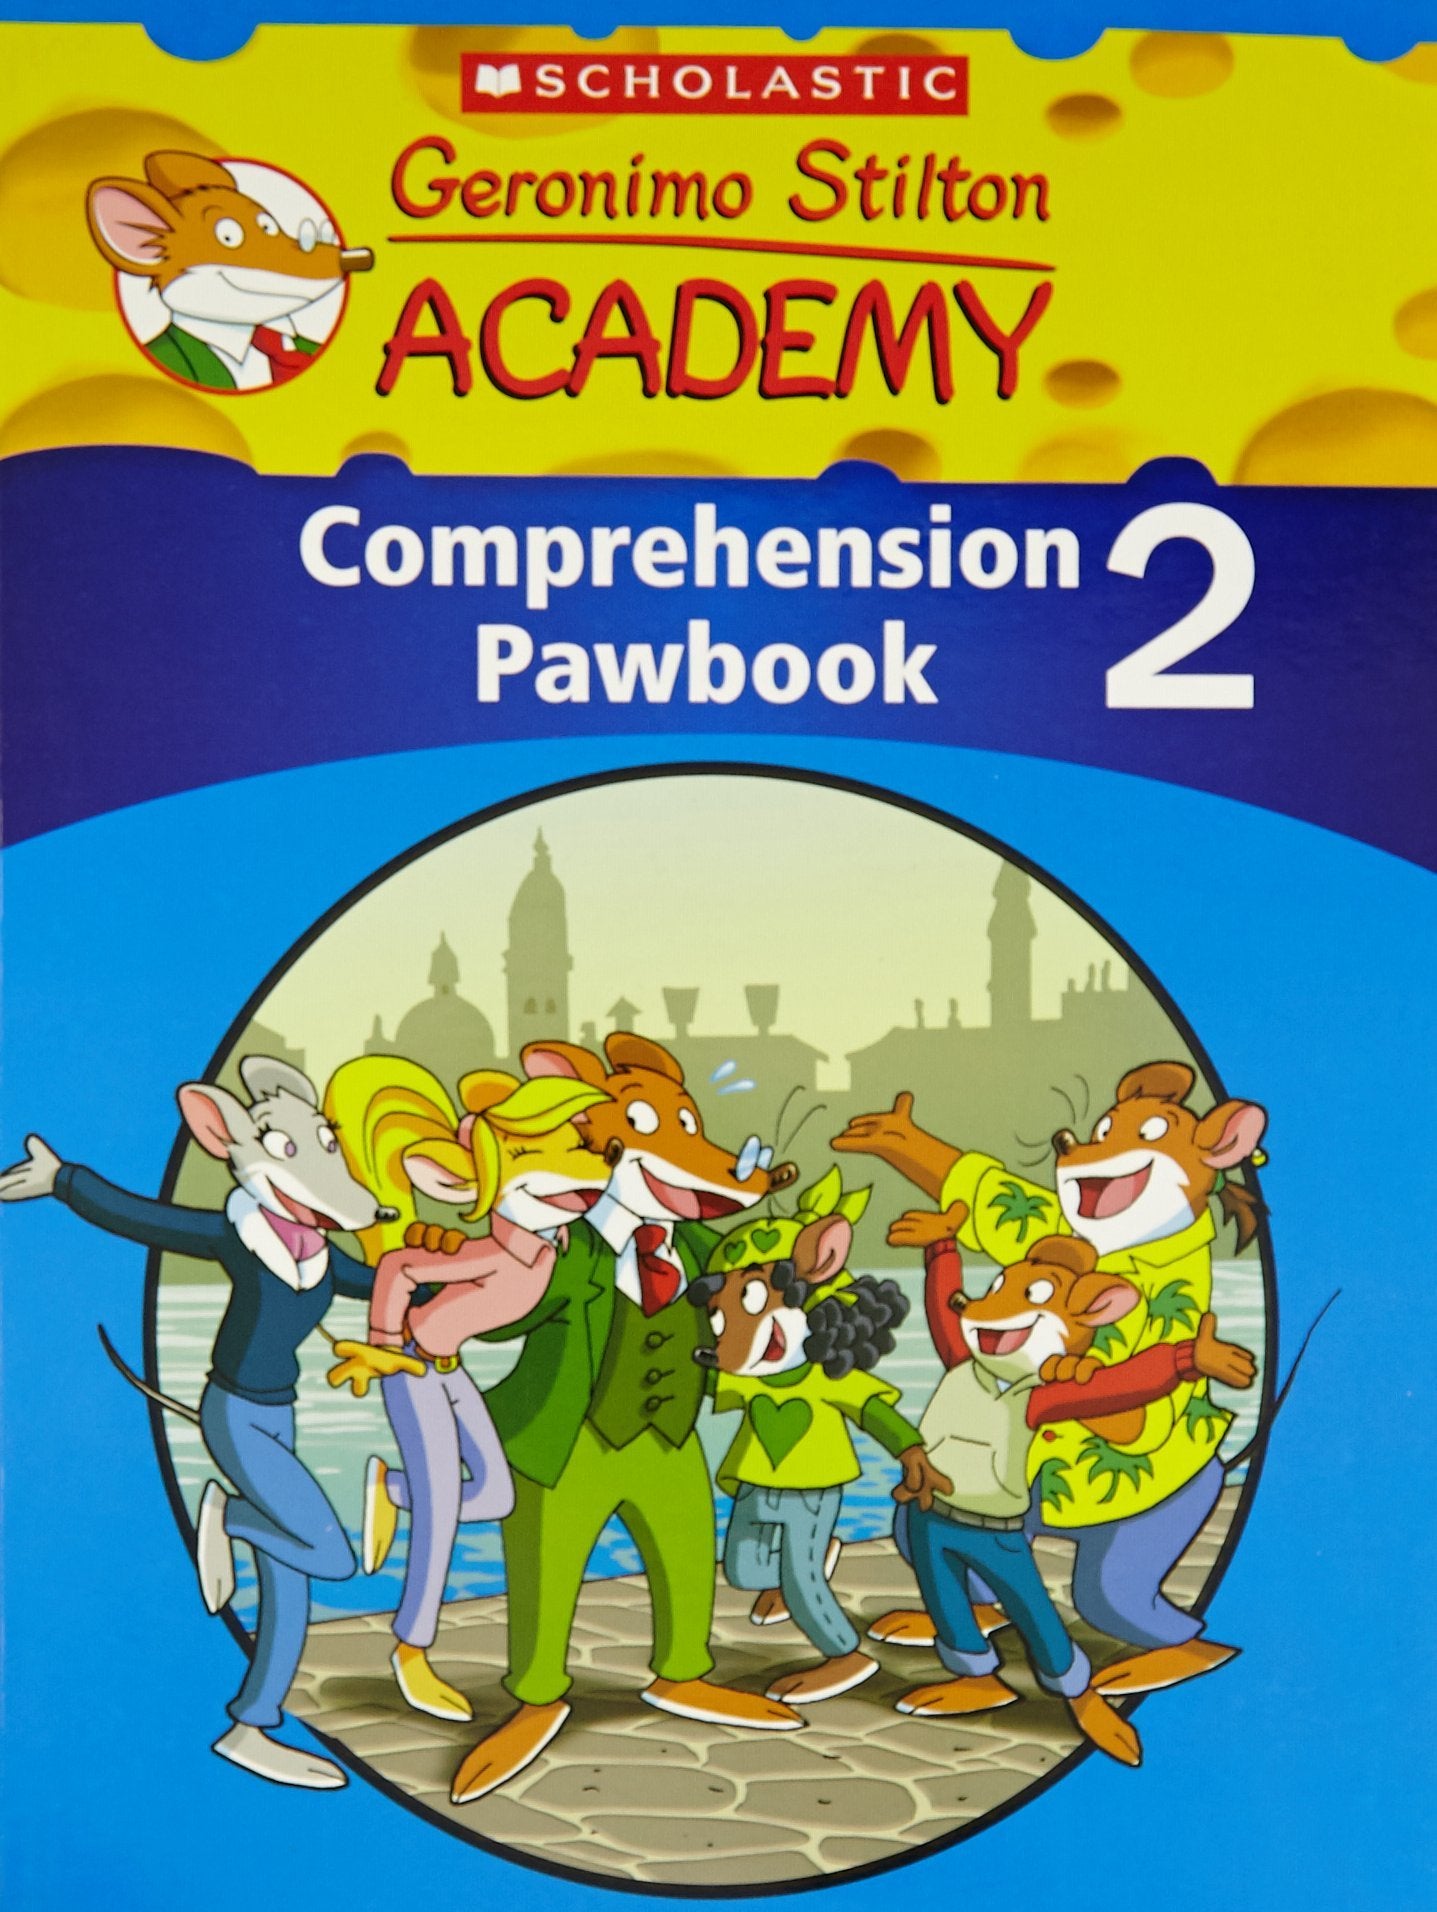 Geronimo Stilton Academy: Comprehension Paw Book 2